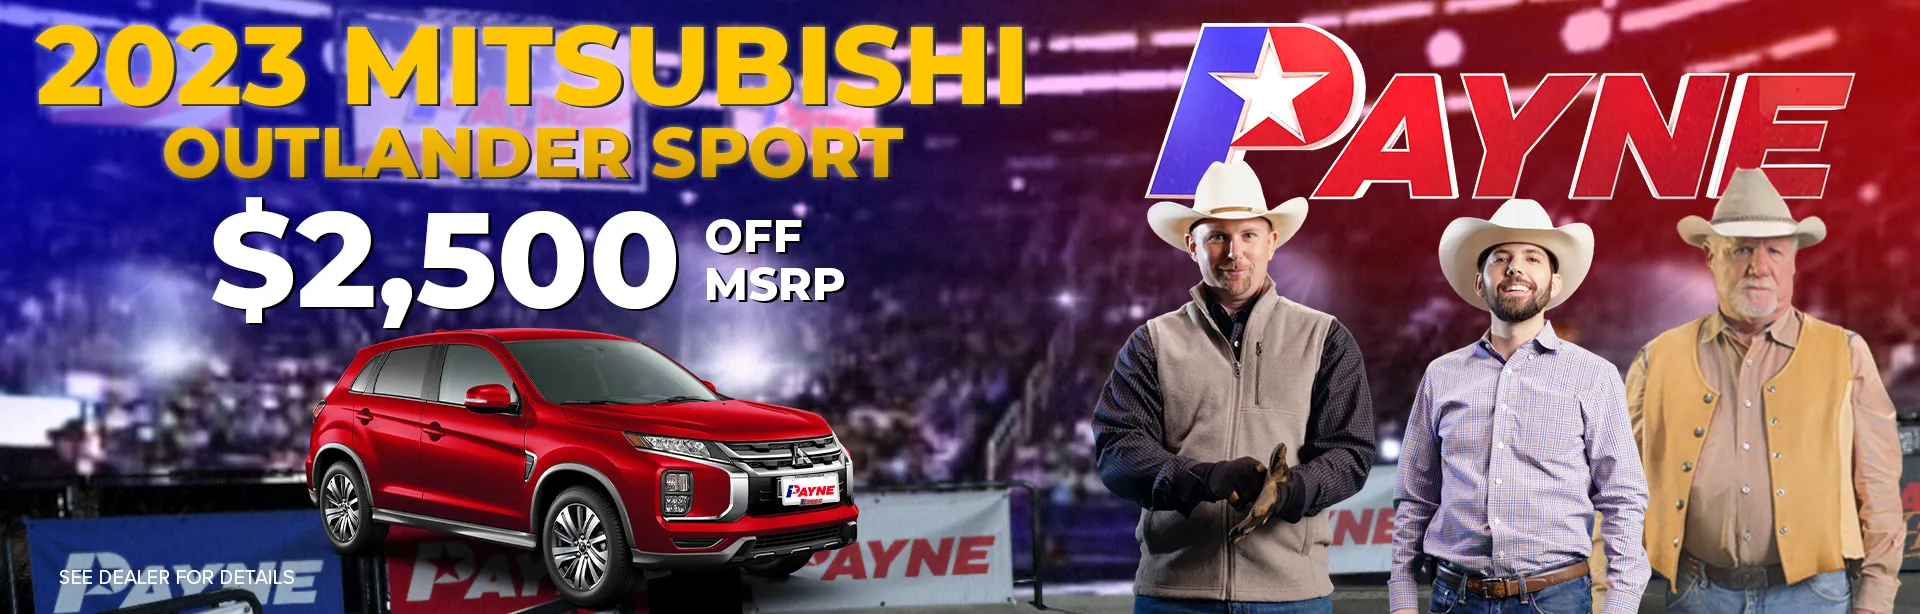 $2,500 off MSRP on a 2023 Mitsubishi Outlander Sport